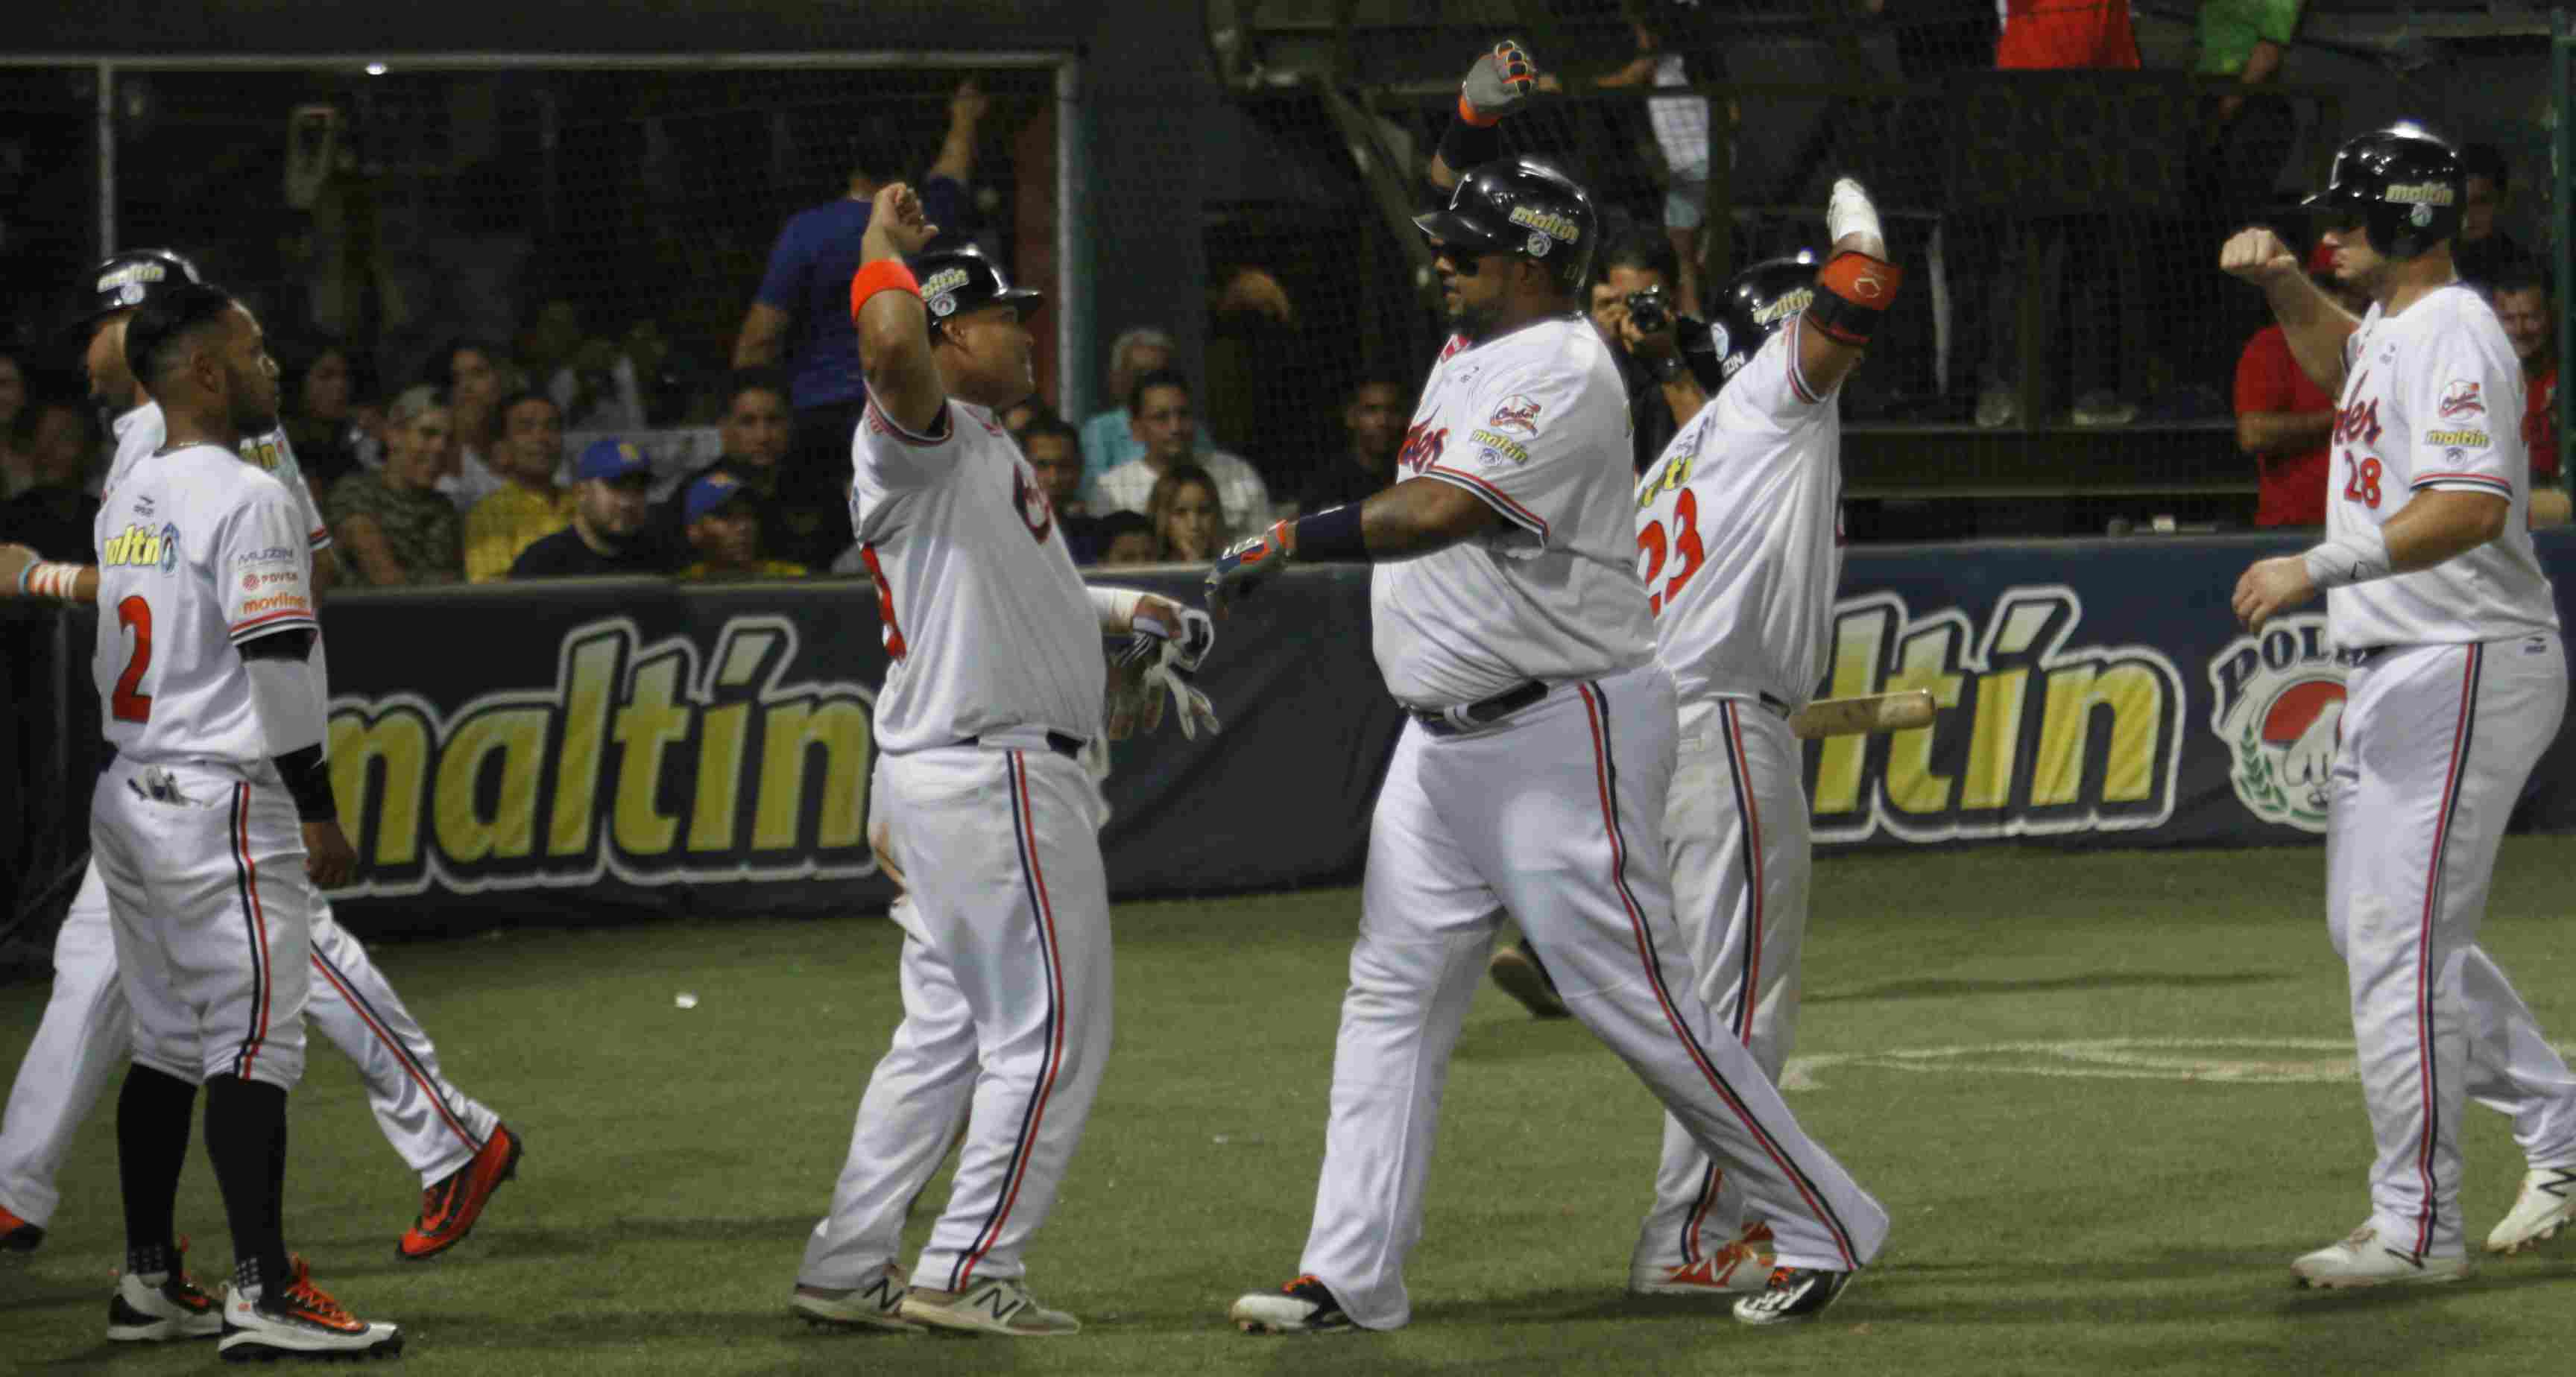 La novena oriental supo mantener al margen a los crepusculares y ahora se colocan a solo un juego de convertirse en campeones de la Liga Venezolana de Béisbol Profesional